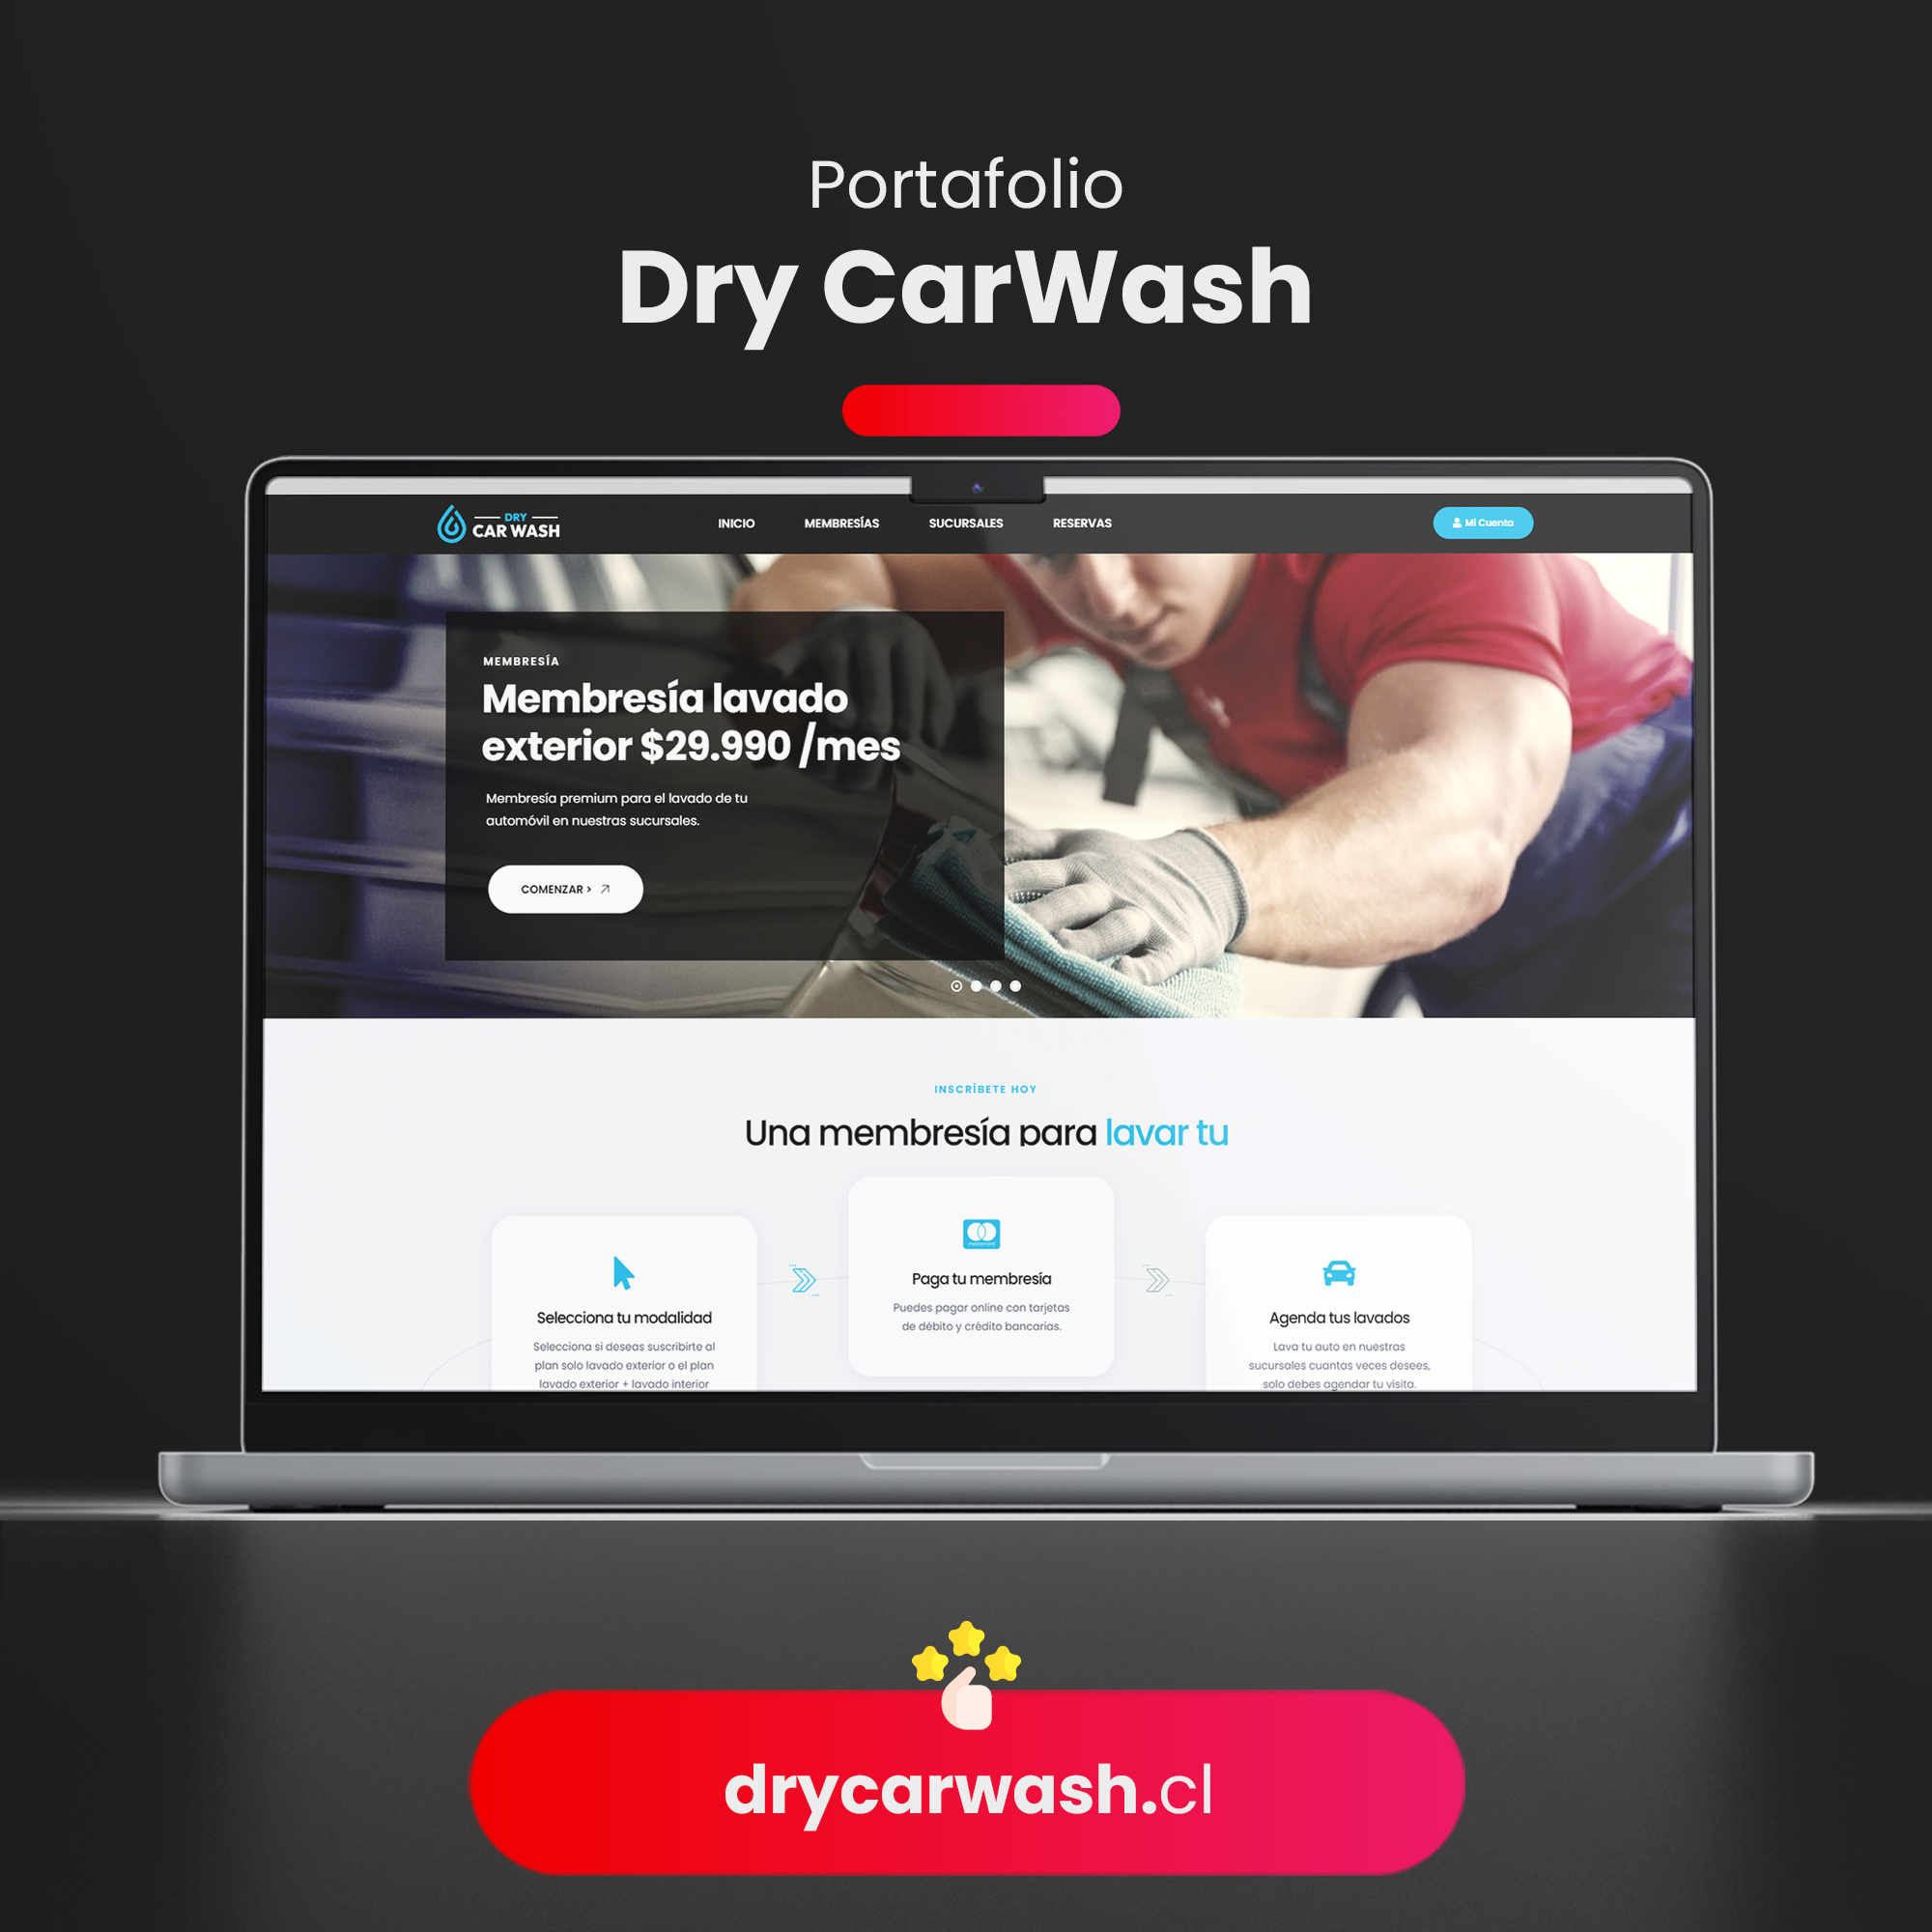 Dry Carwash